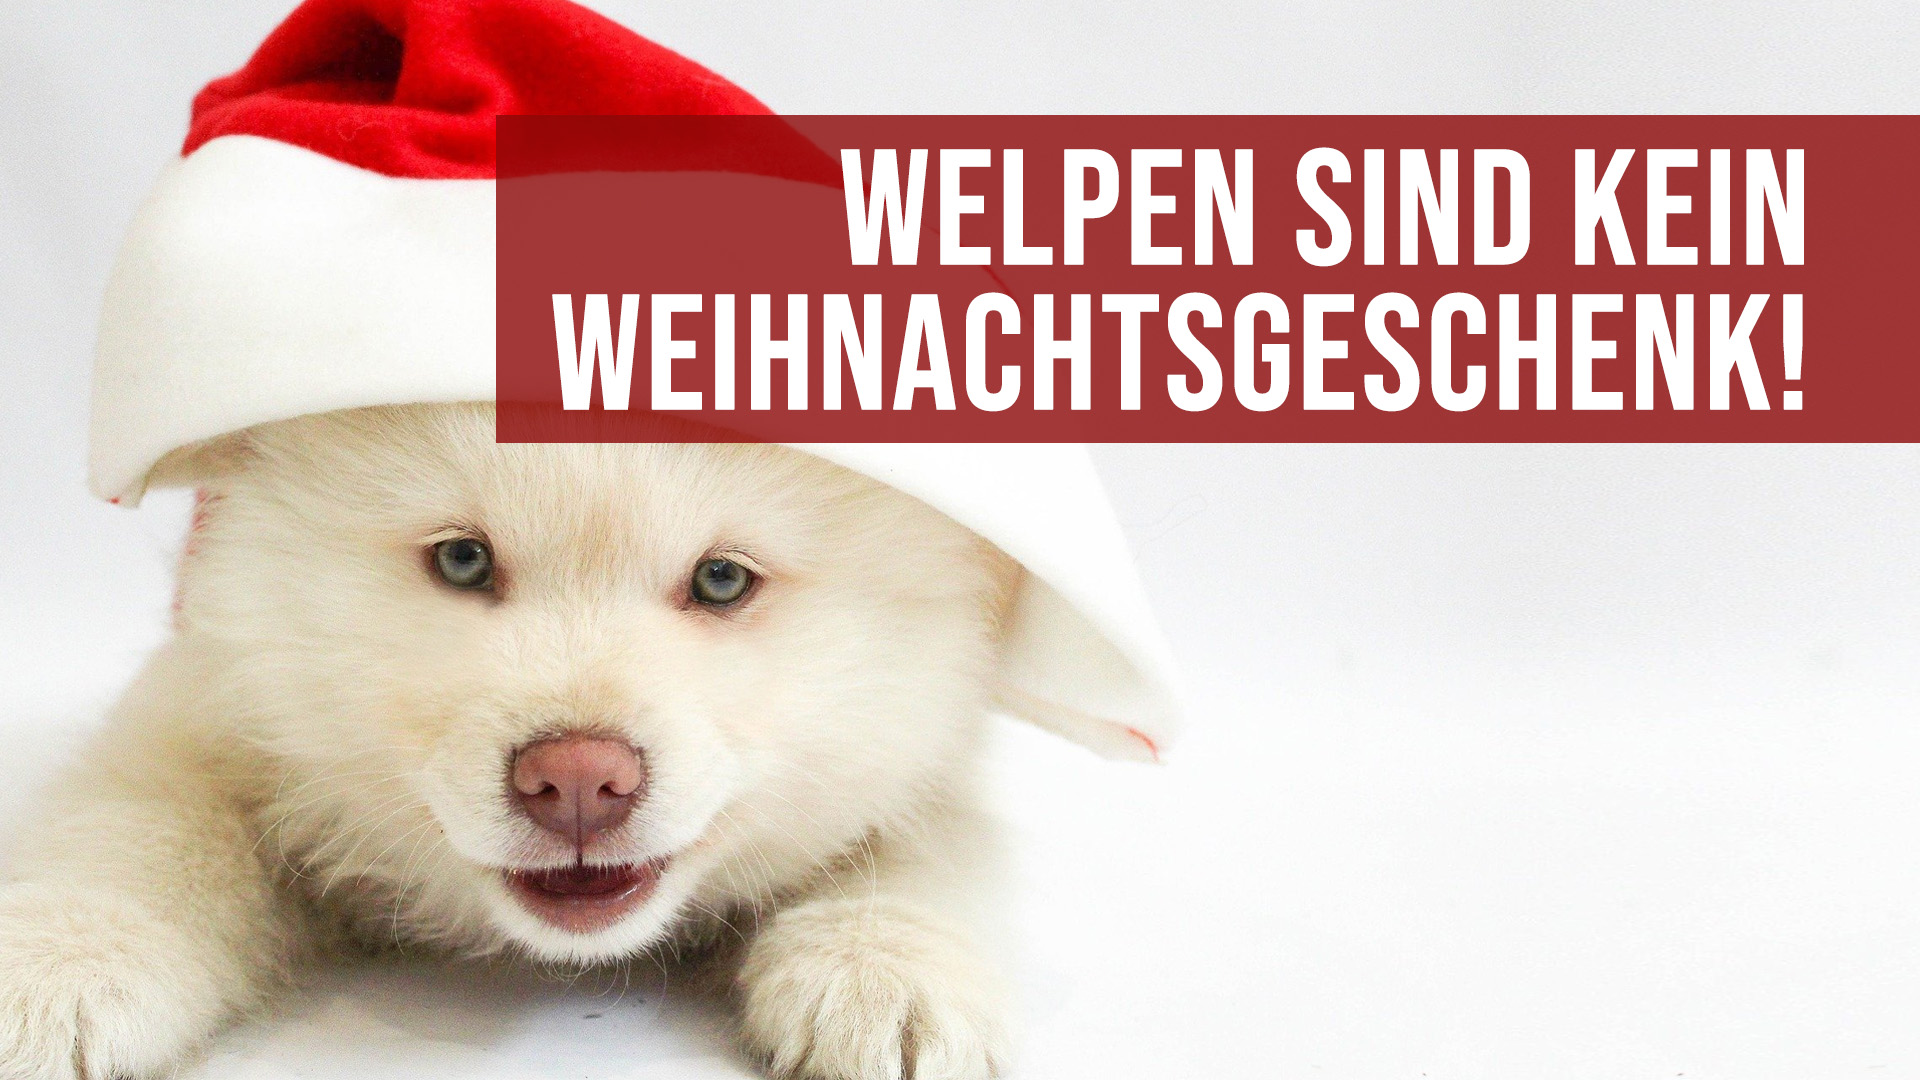 Welpen sind kein Weihnachtsgeschenk - Veterinäramt Offenbach